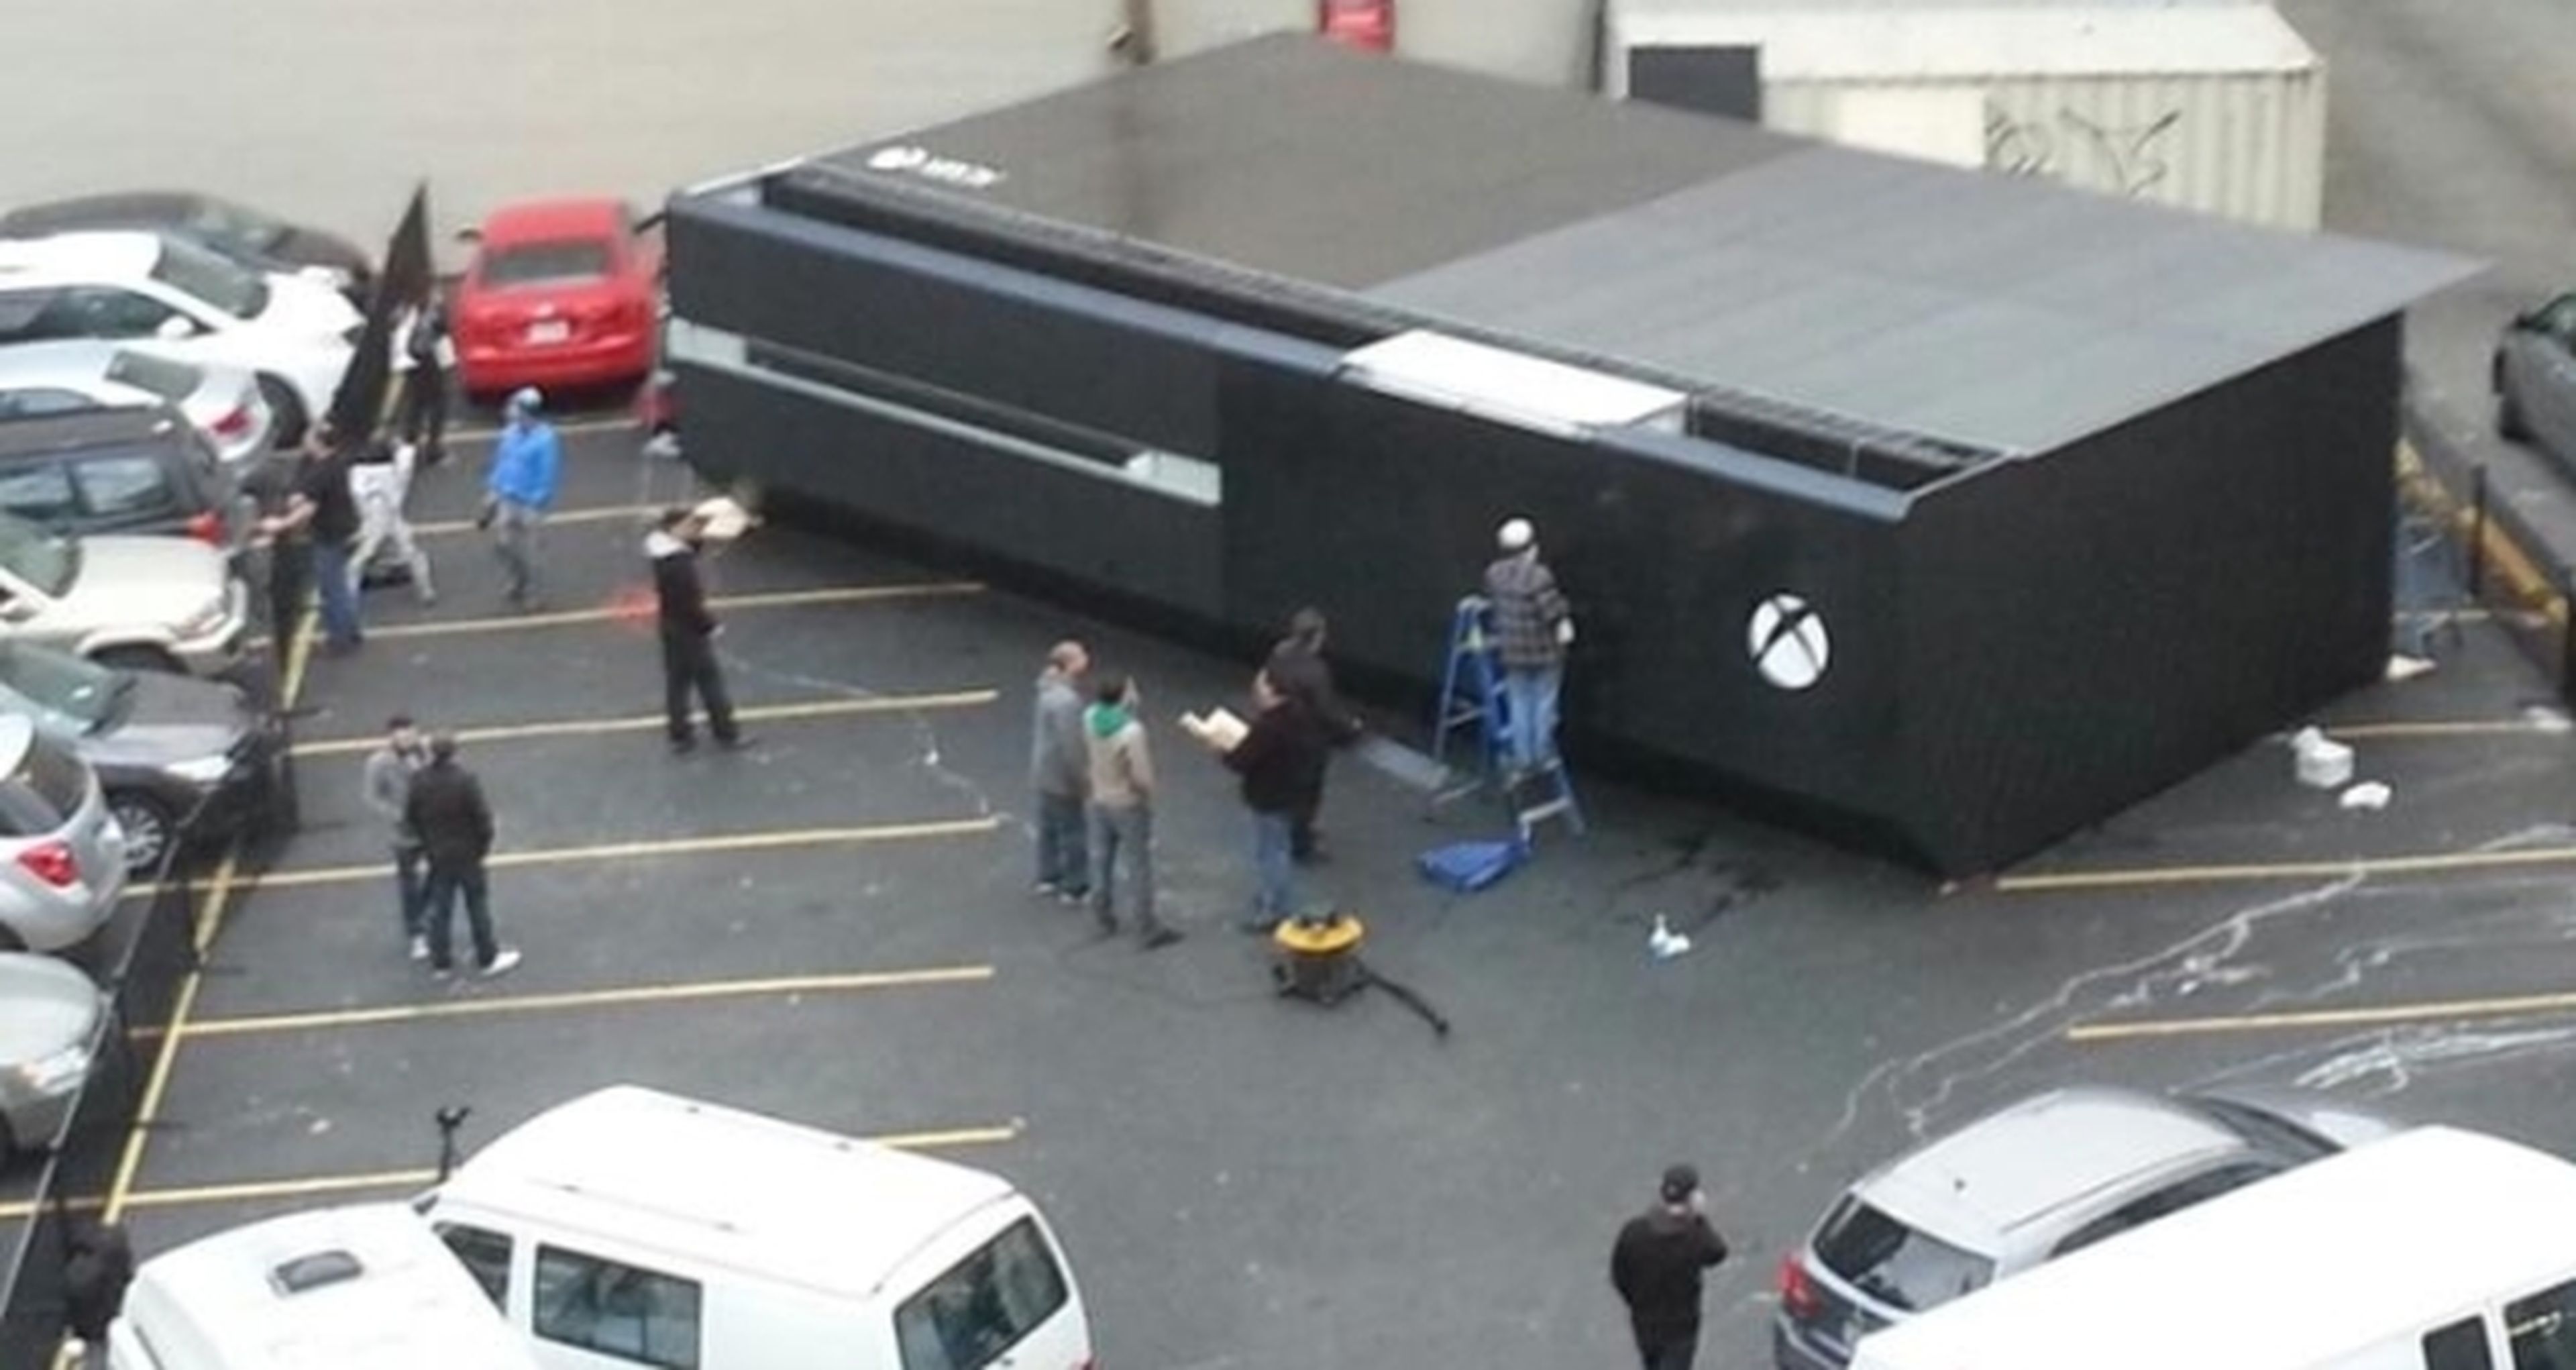 Microsoft coloca una Xbox One gigante en Vancouver